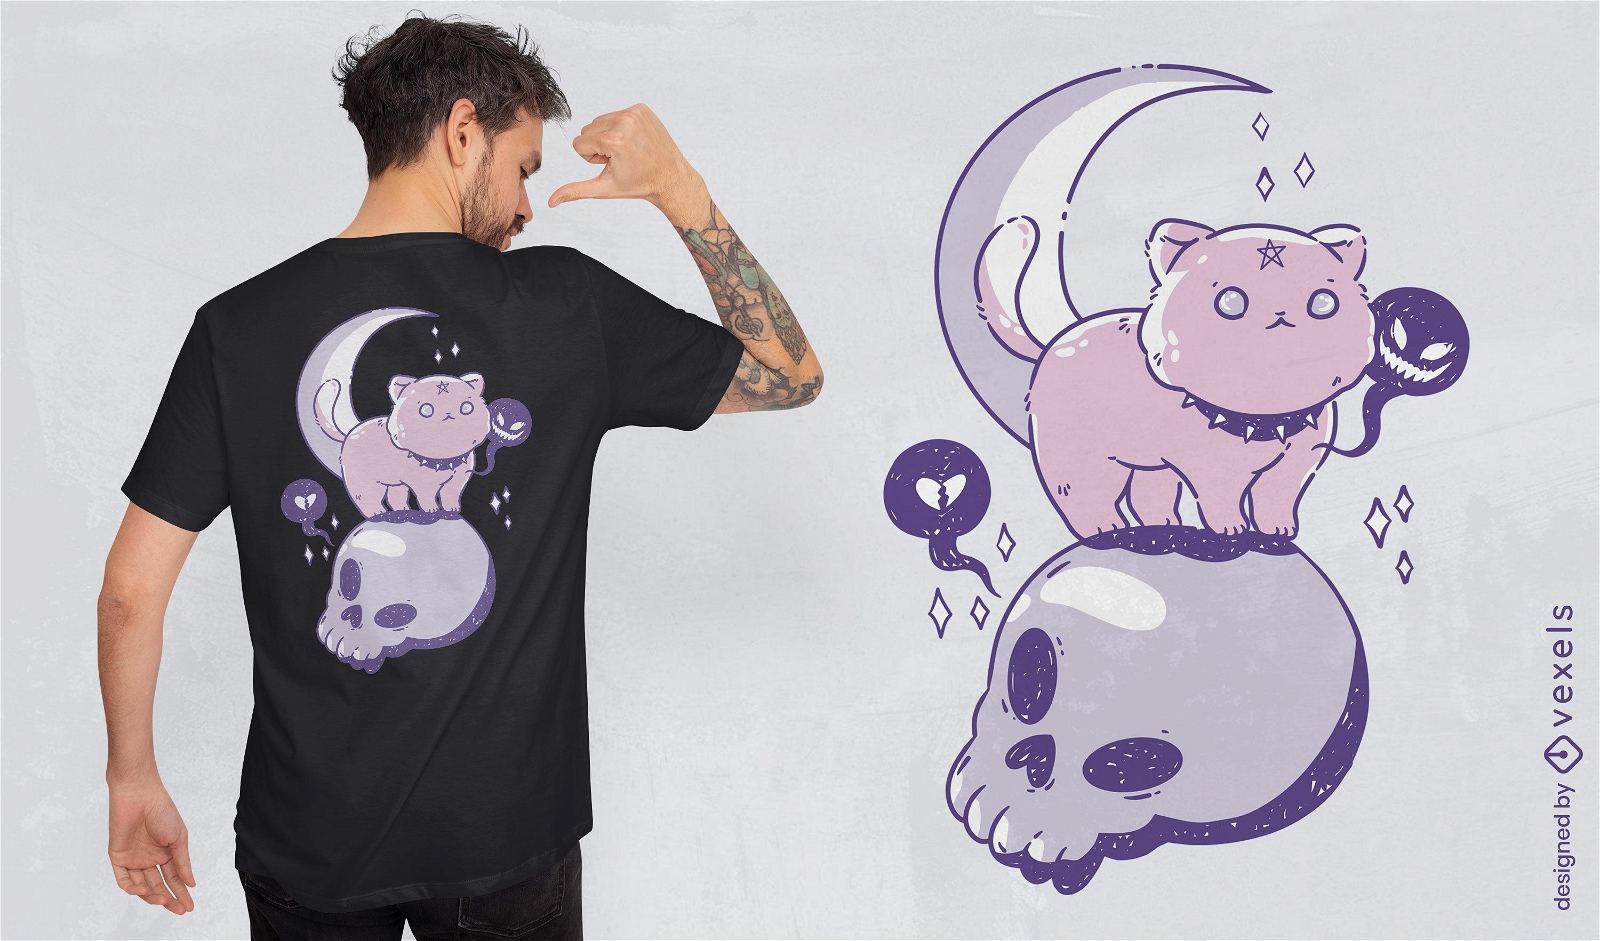 Animal de gato gótico no design de t-shirt de caveira